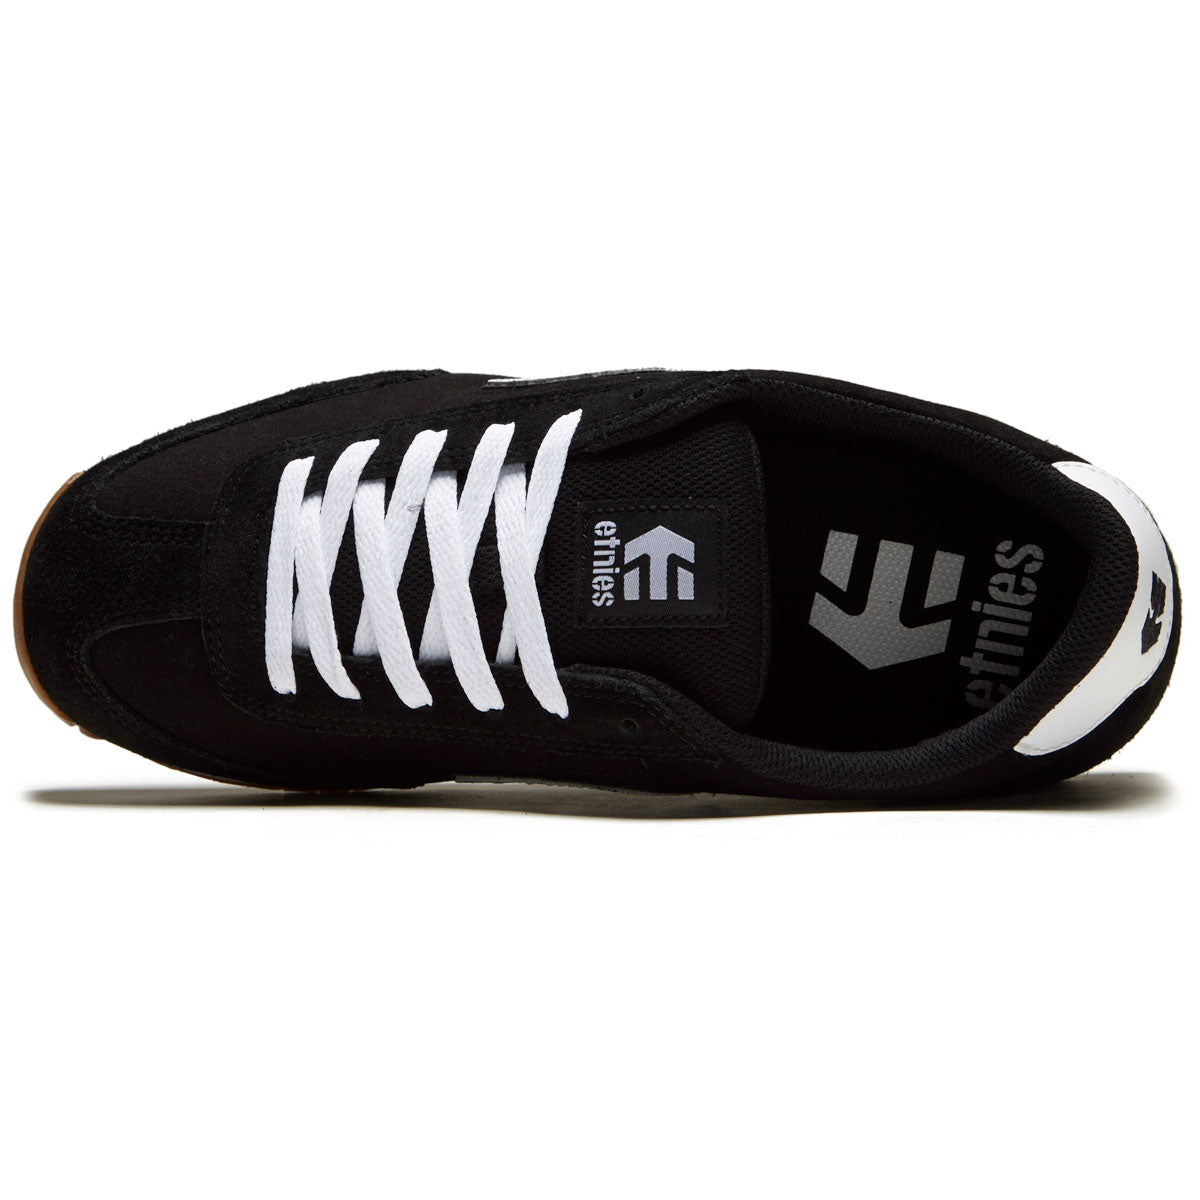 Etnies Lo-cut Ii Ls Shoes - Black/White/Gum image 3